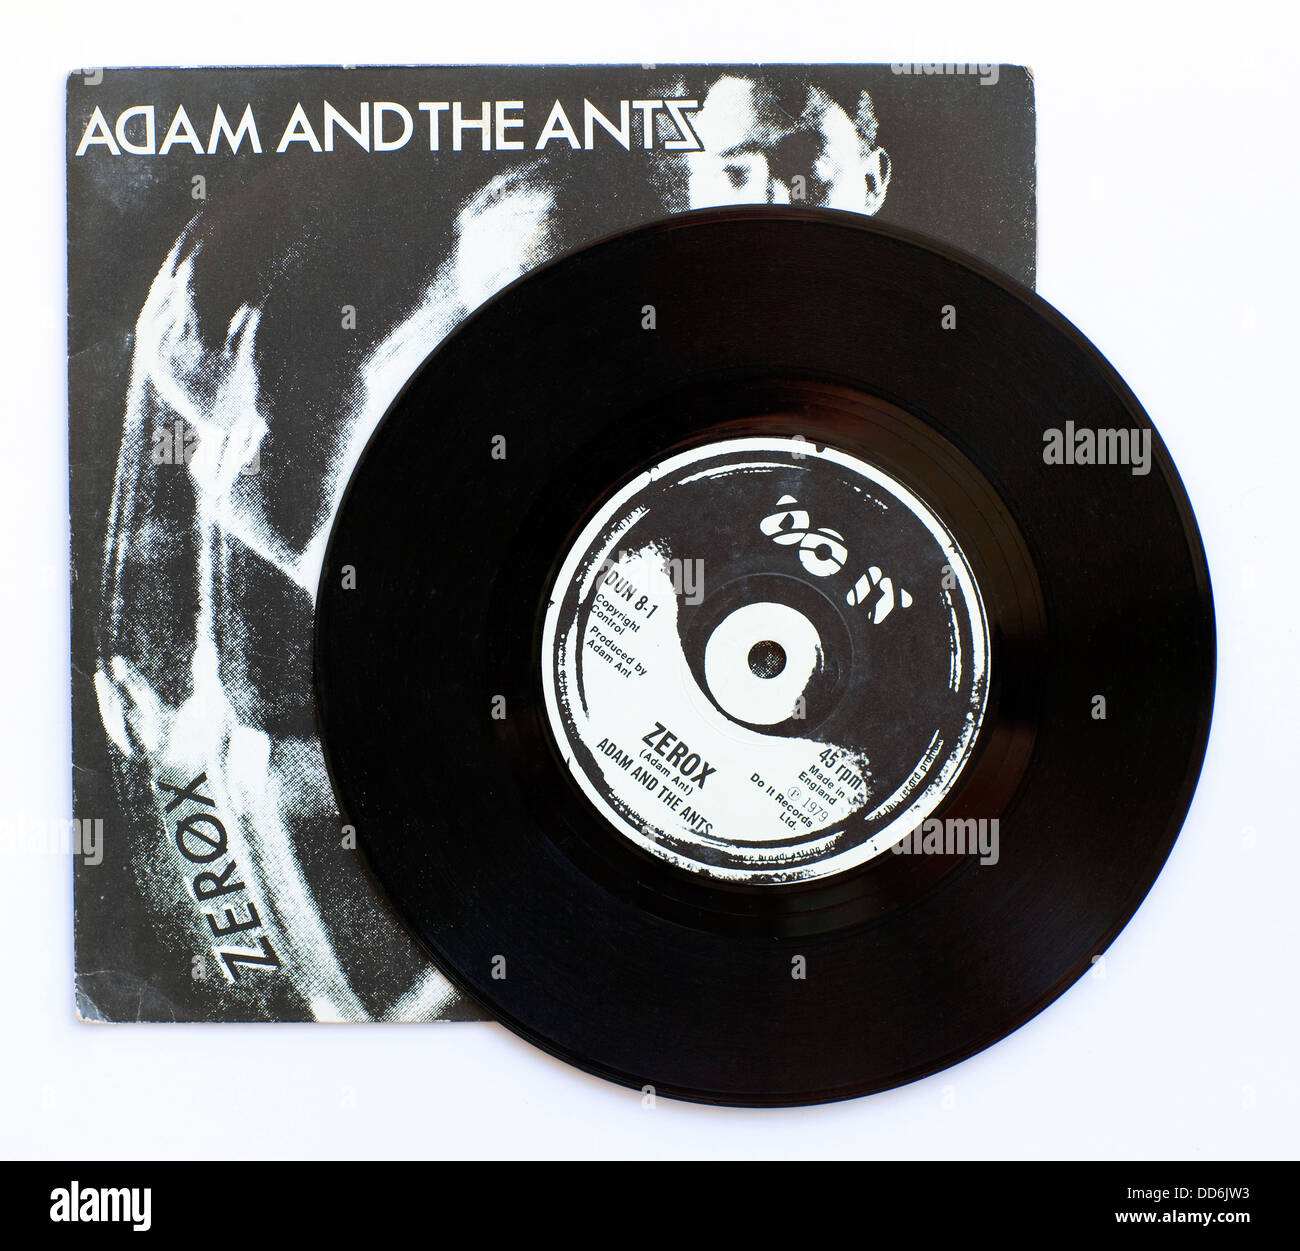 Adam and the Ants - Zerox, 1979 7' Cover Single auf Do IT Records - nur für redaktionelle Verwendung Stockfoto